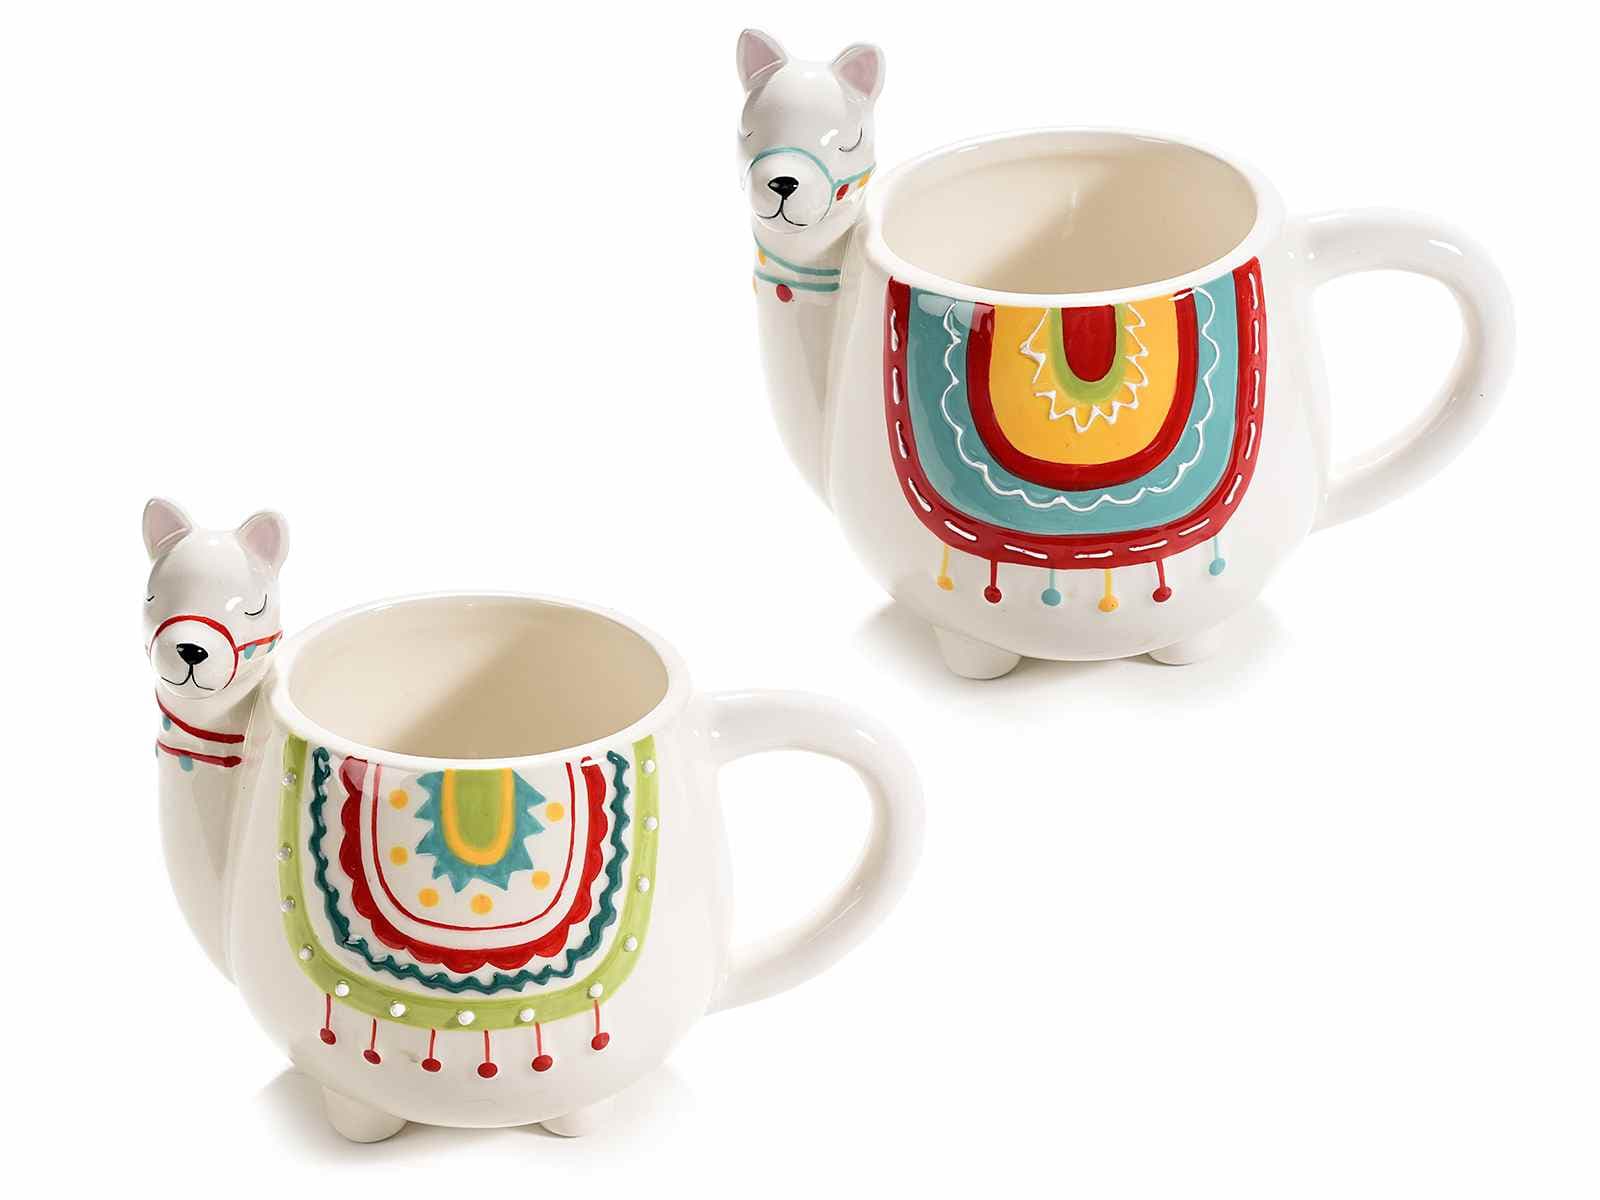 Tazza lama in ceramica colorata con dettagli in rilievo - Dolci pensieri gift